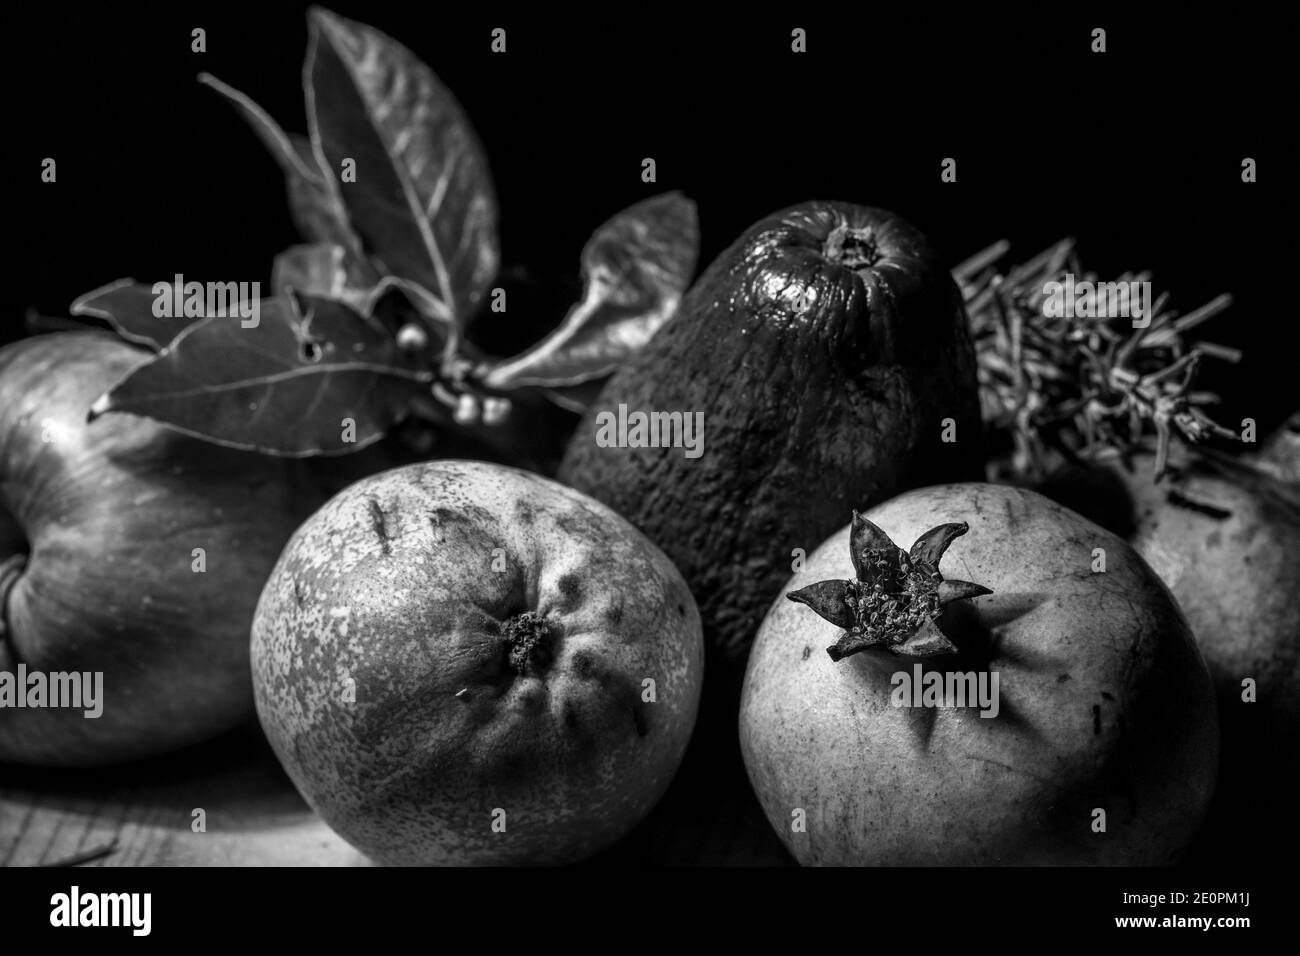 Pomegranate, pear, apple, avocado, rosemary and bay leaf. Stock Photo